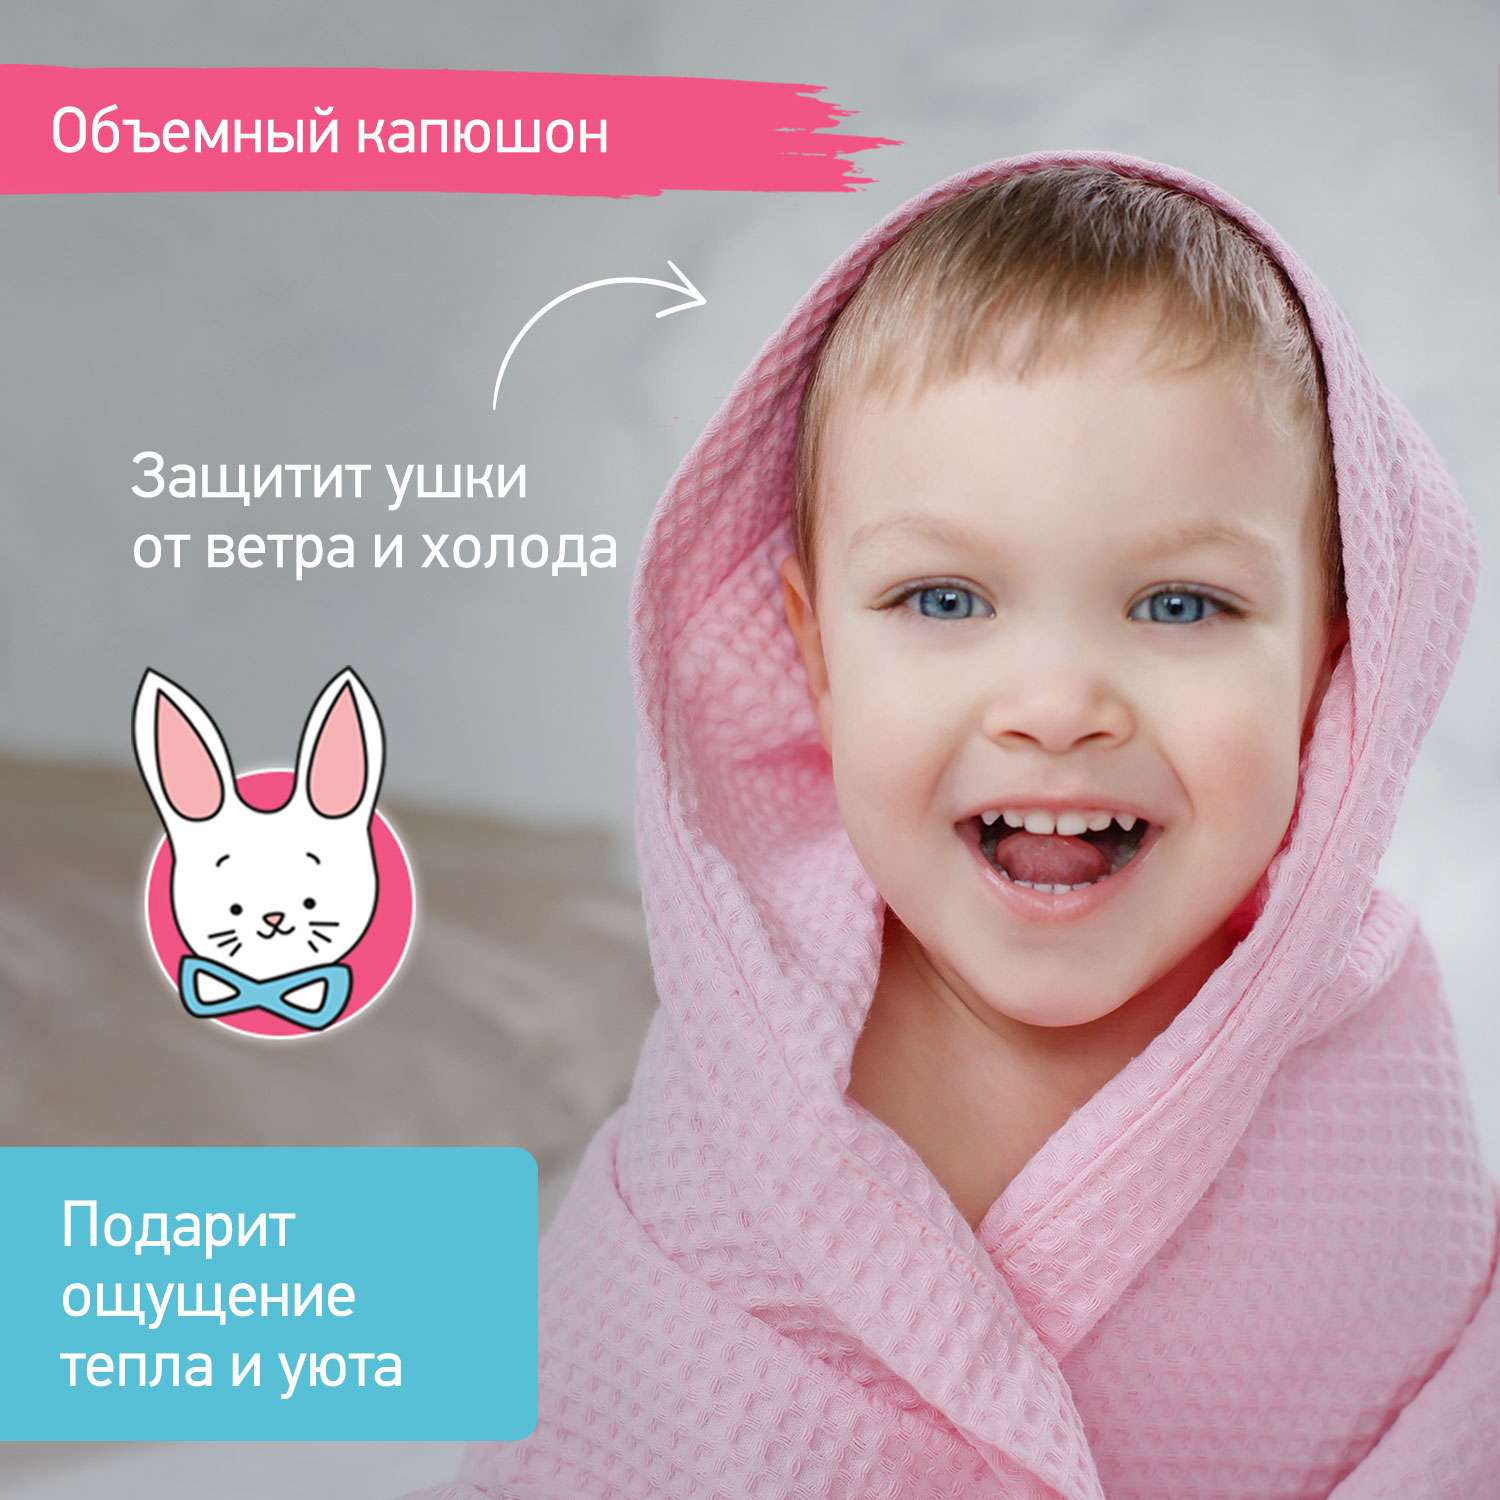 Детское полотенце вафельное ROXY-KIDS для новорожденных с уголком капюшоном цвет розовый - фото 4